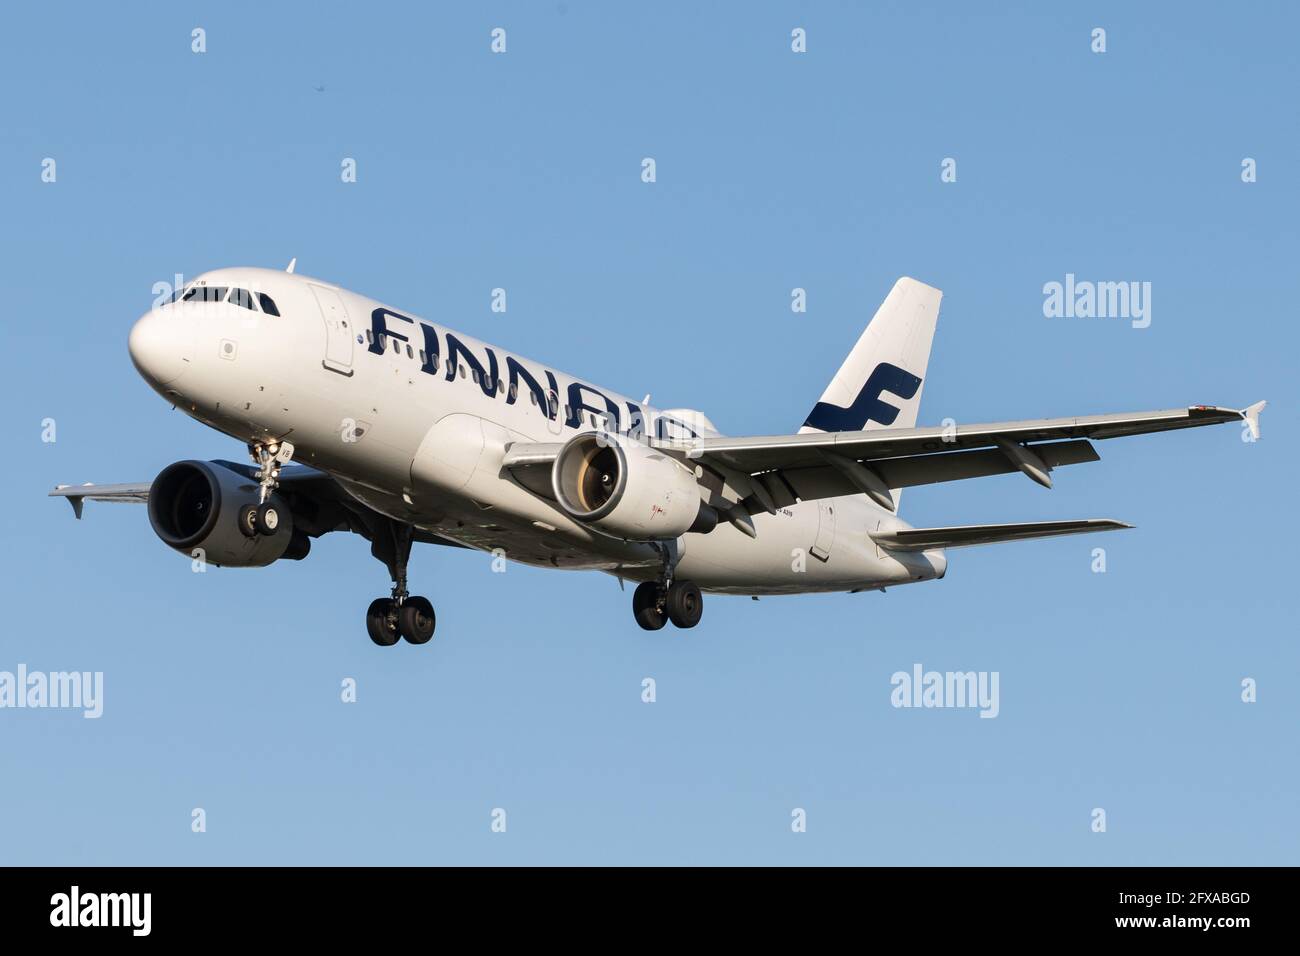 LONDRA, REGNO UNITO - 11 febbraio 2020: Finnair (AY / fin) si avvicina all'aeroporto Heathrow di Londra (EGLL/LHR) con un Airbus A319 (OH-LVB/1107). Foto Stock